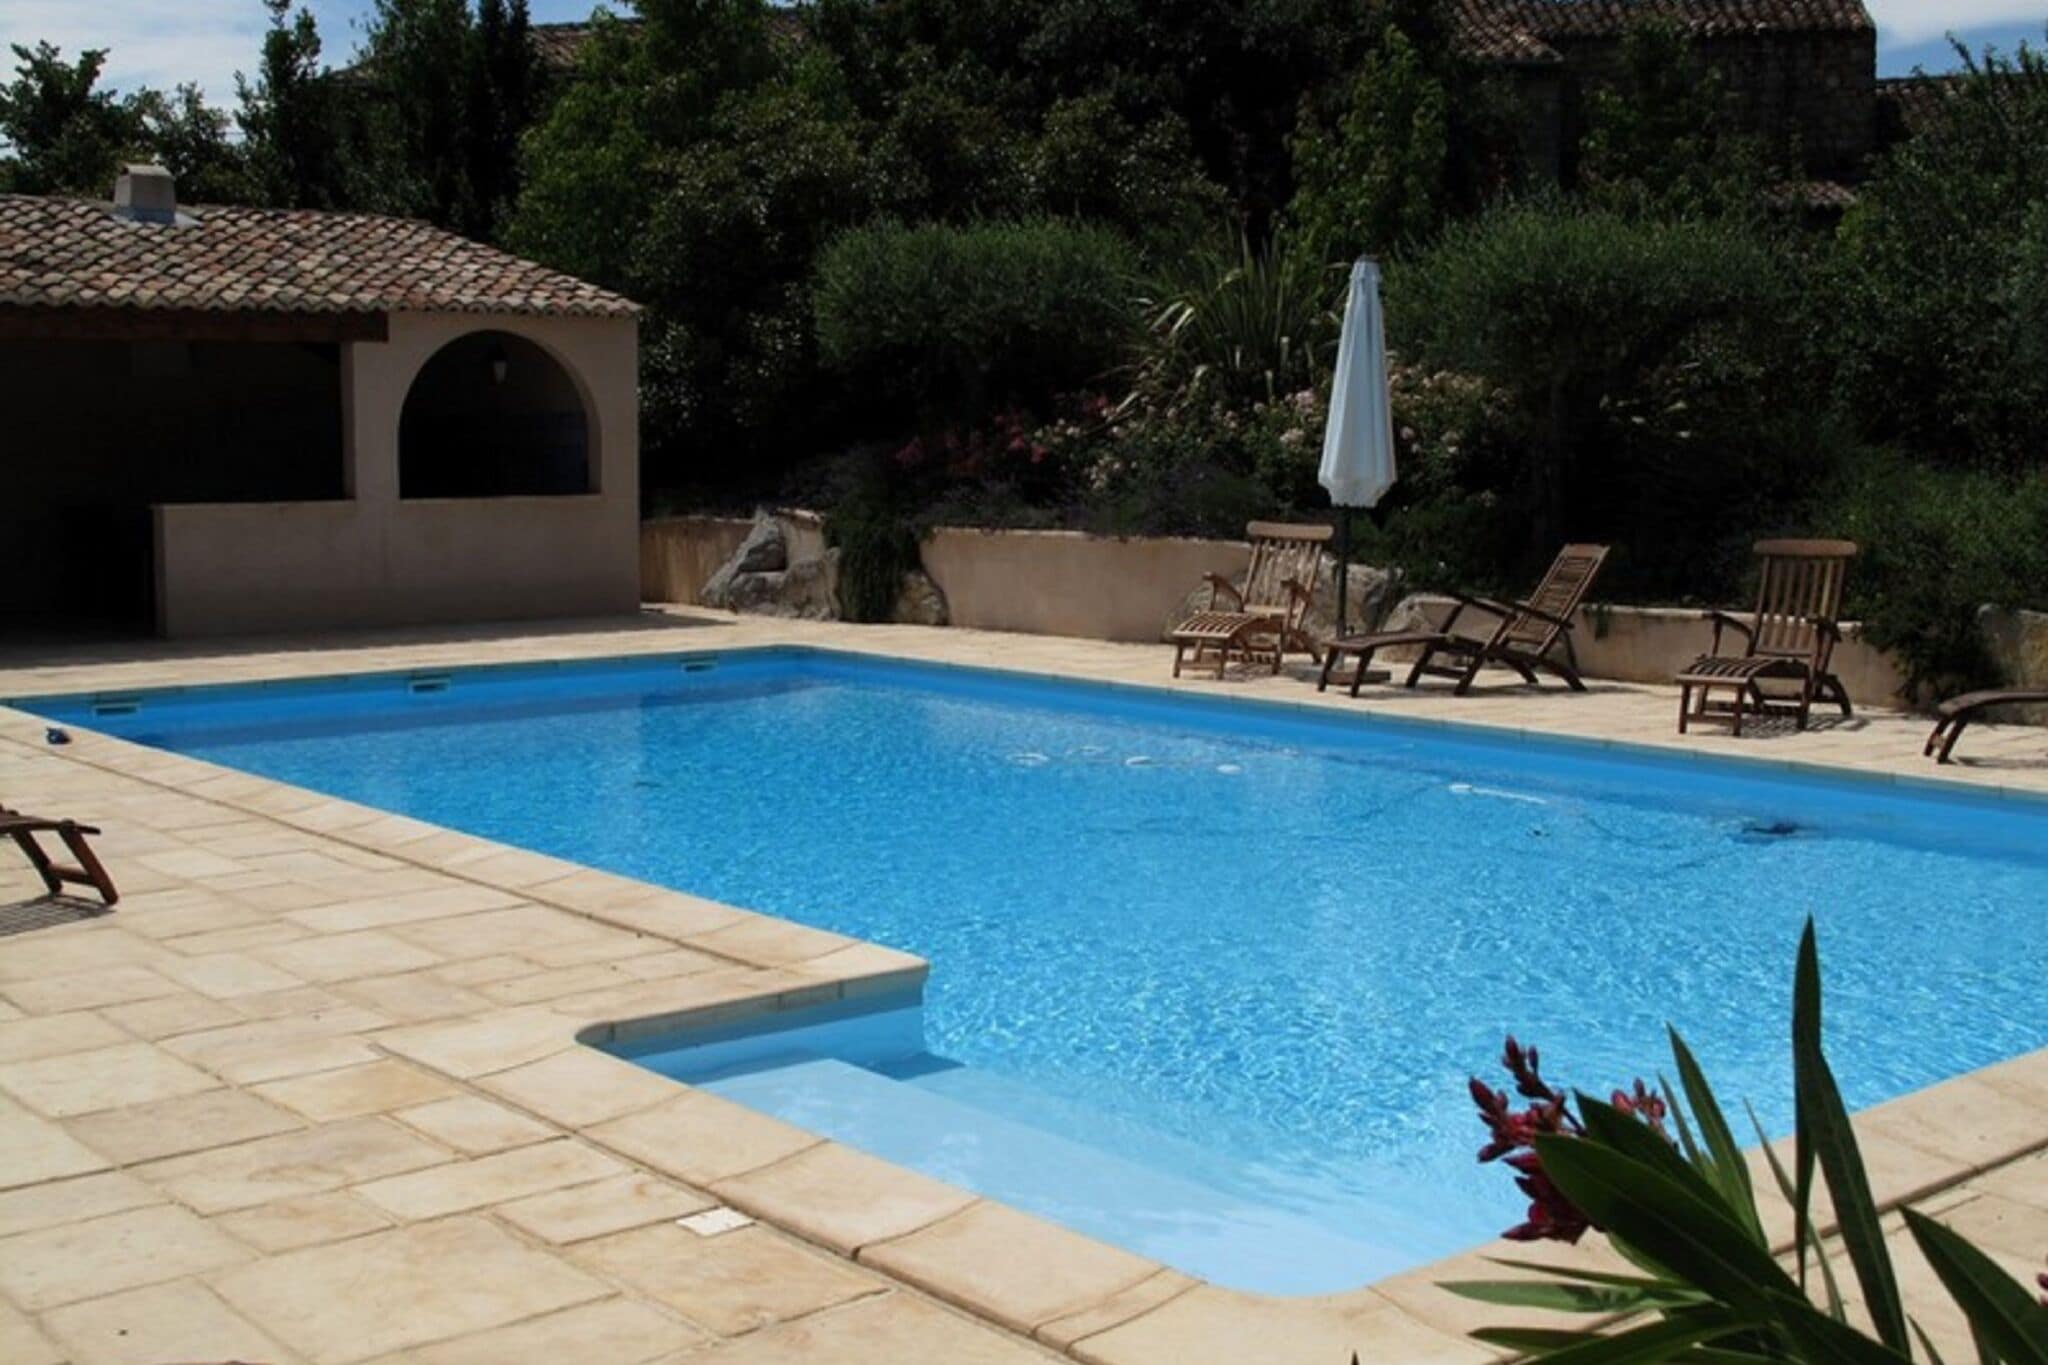 Stenen vakantiehuis in Rosières met een gedeeld zwembad